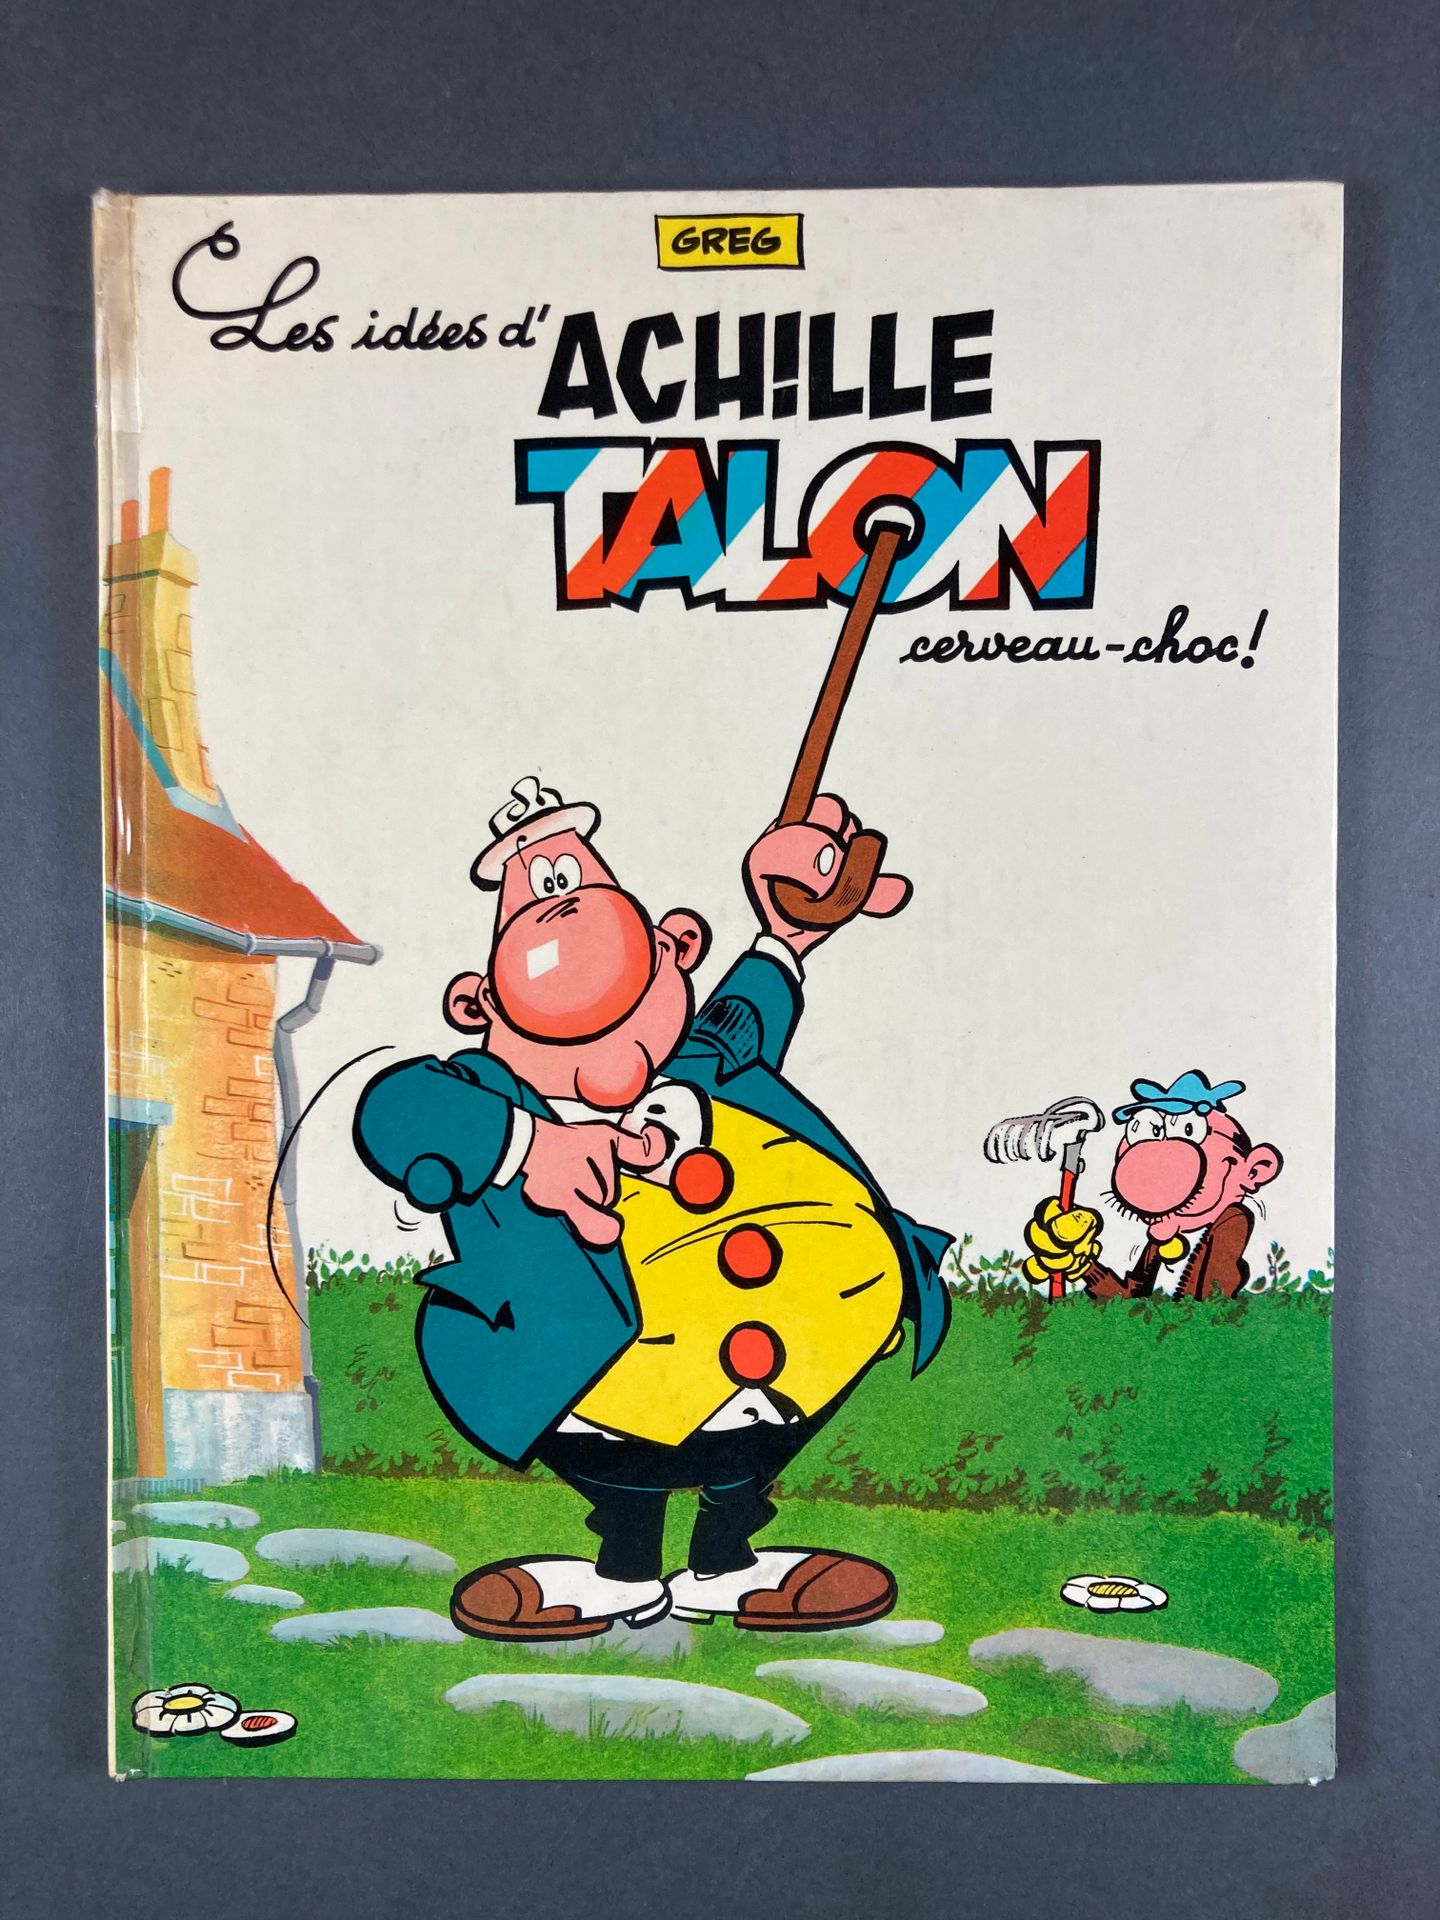 Greg - Achille Talon Les idées d'Achille Talon cerveau-choc !, 1, 1966, EO, chez&hellip;